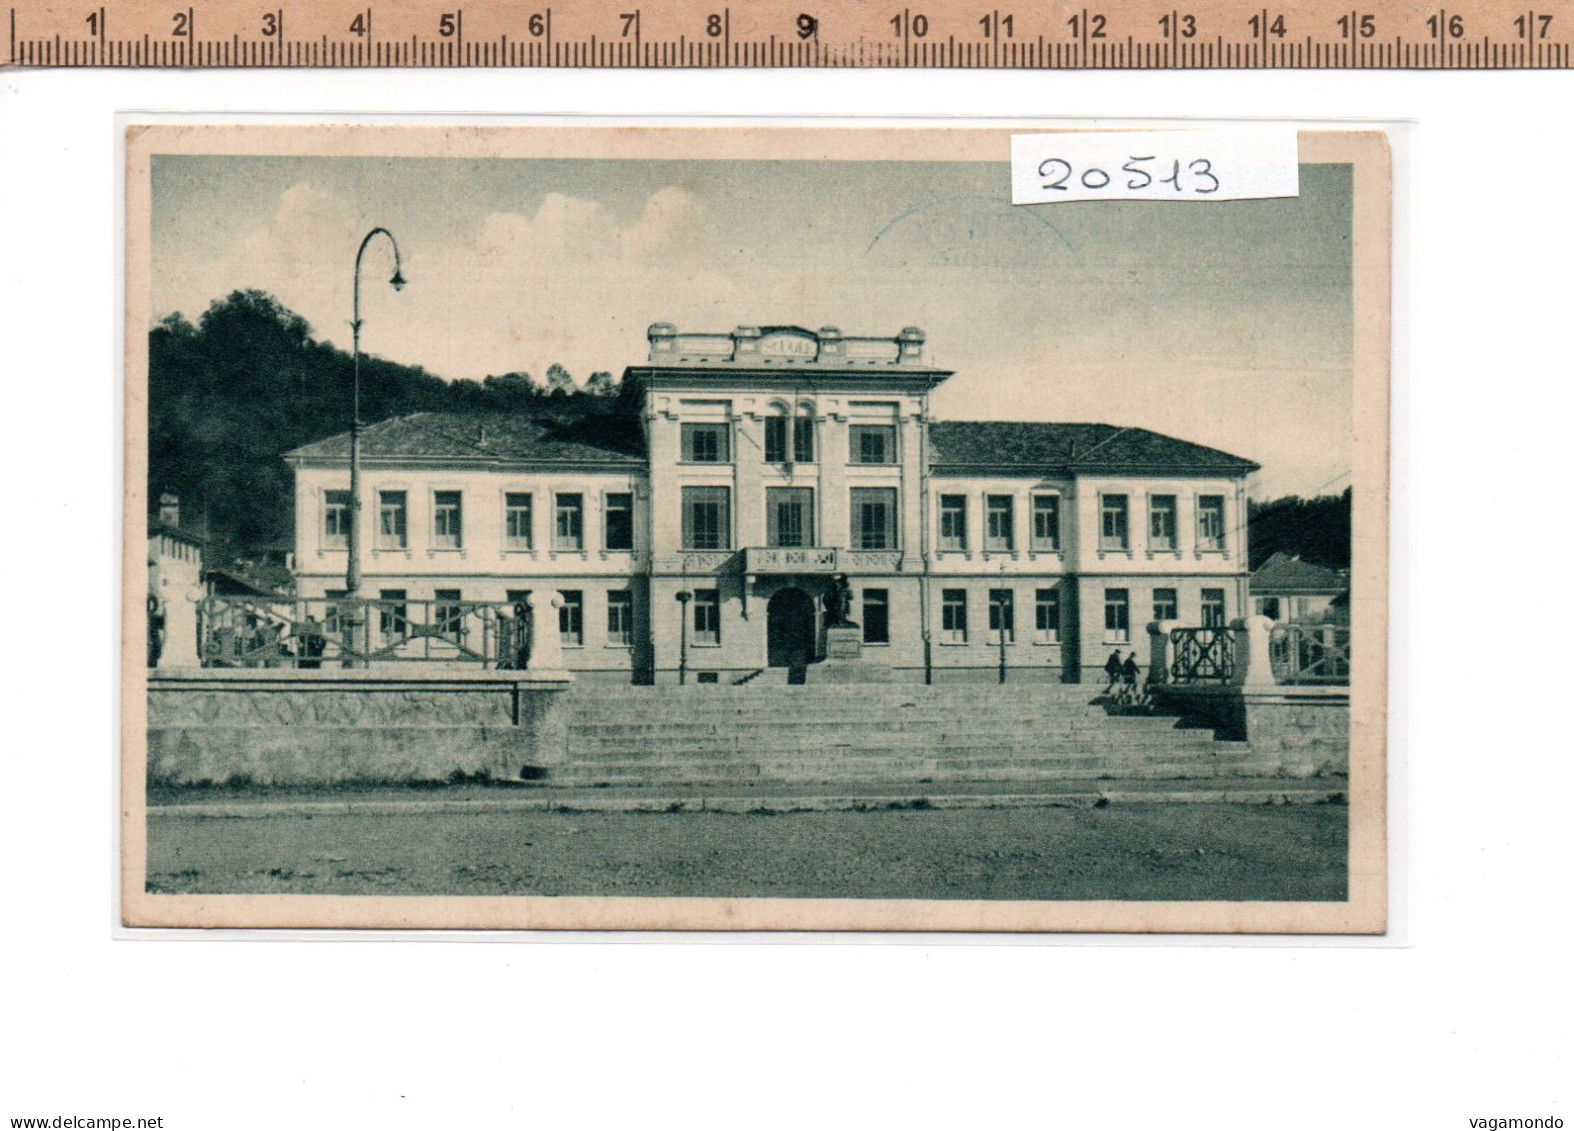 20513 BORGOSESIA SCUOLE COMUNALI PIAZZA FRASCOTTI 1942 - Vercelli